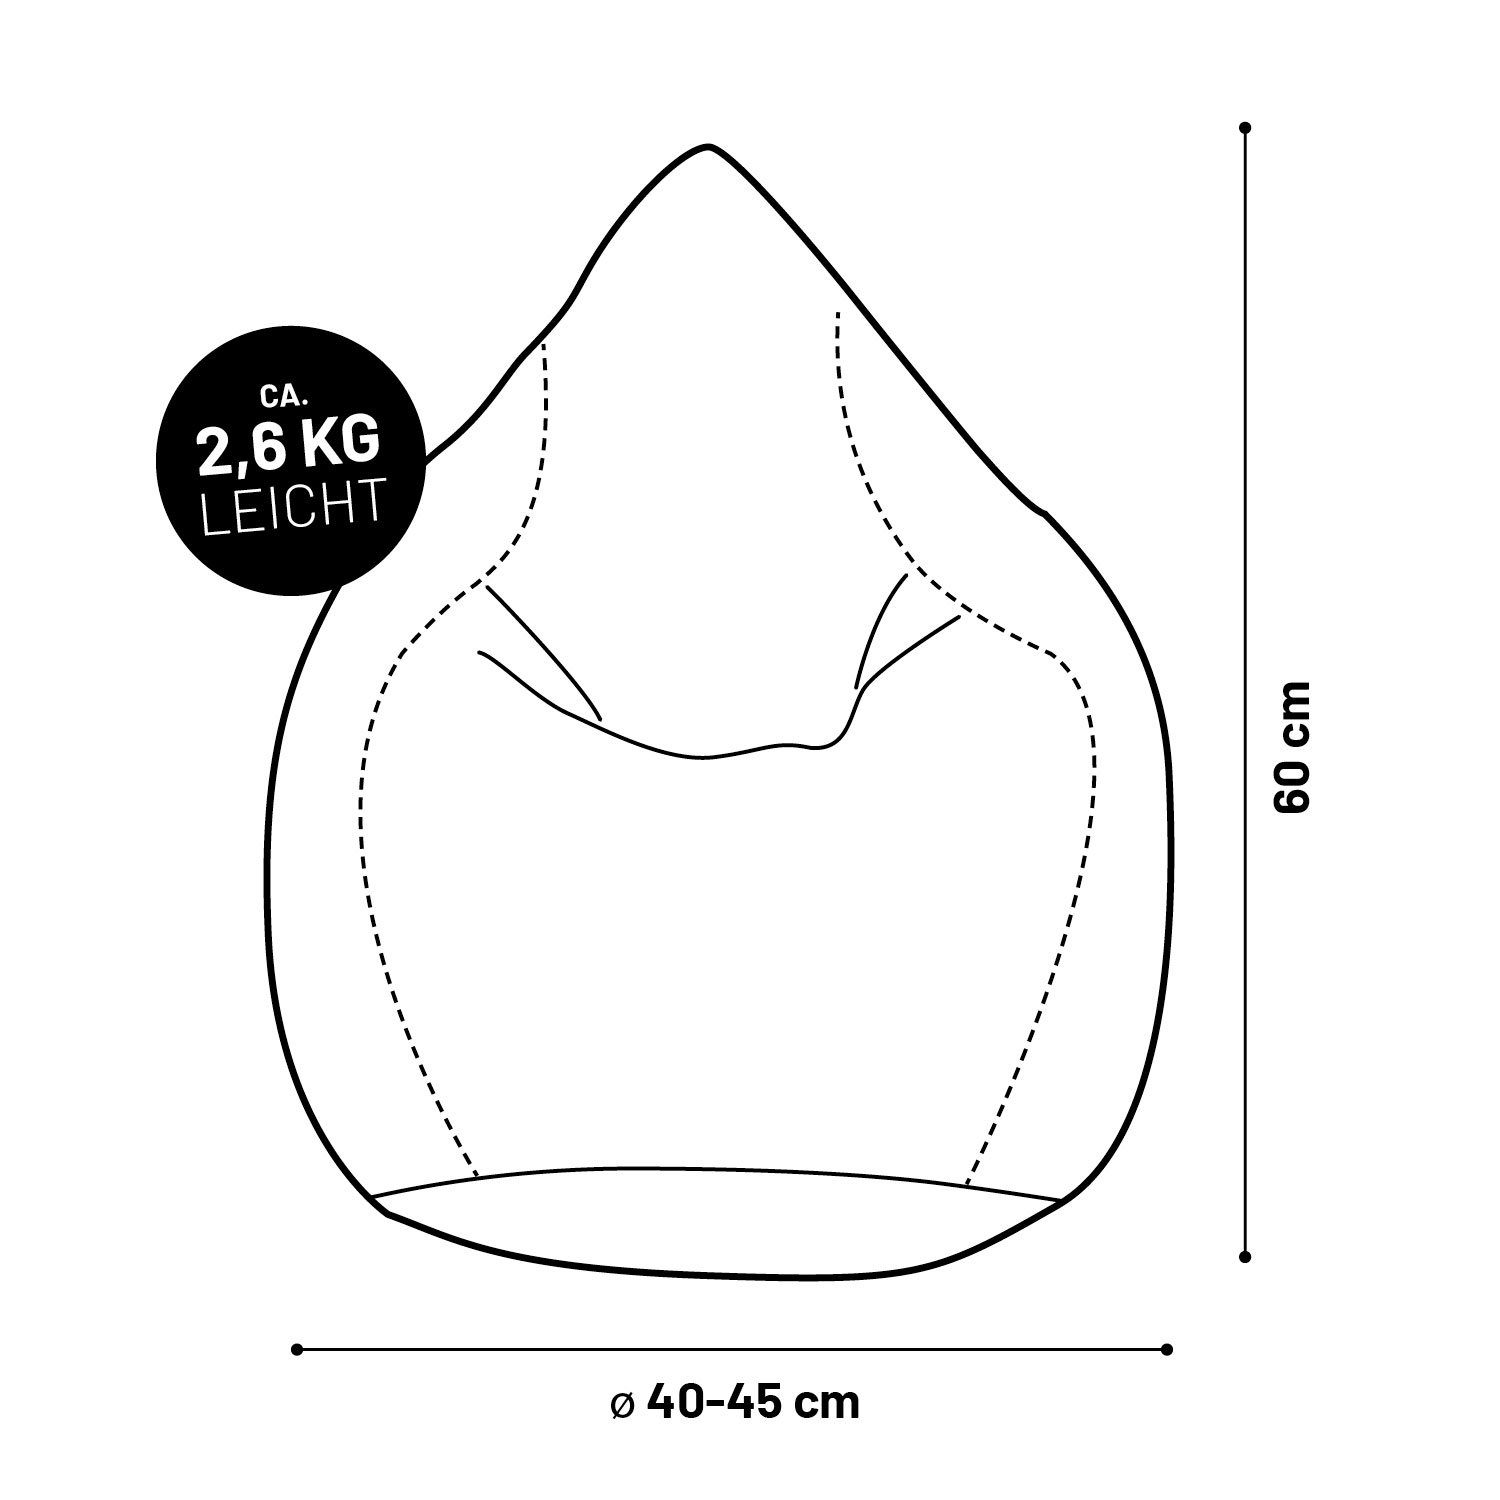 Lumaland Sitzsack Luxury XL Bean robust weich Sitzkissen Microvelours 60x45cm, Bodenkissen waschbar Bag orange 120L